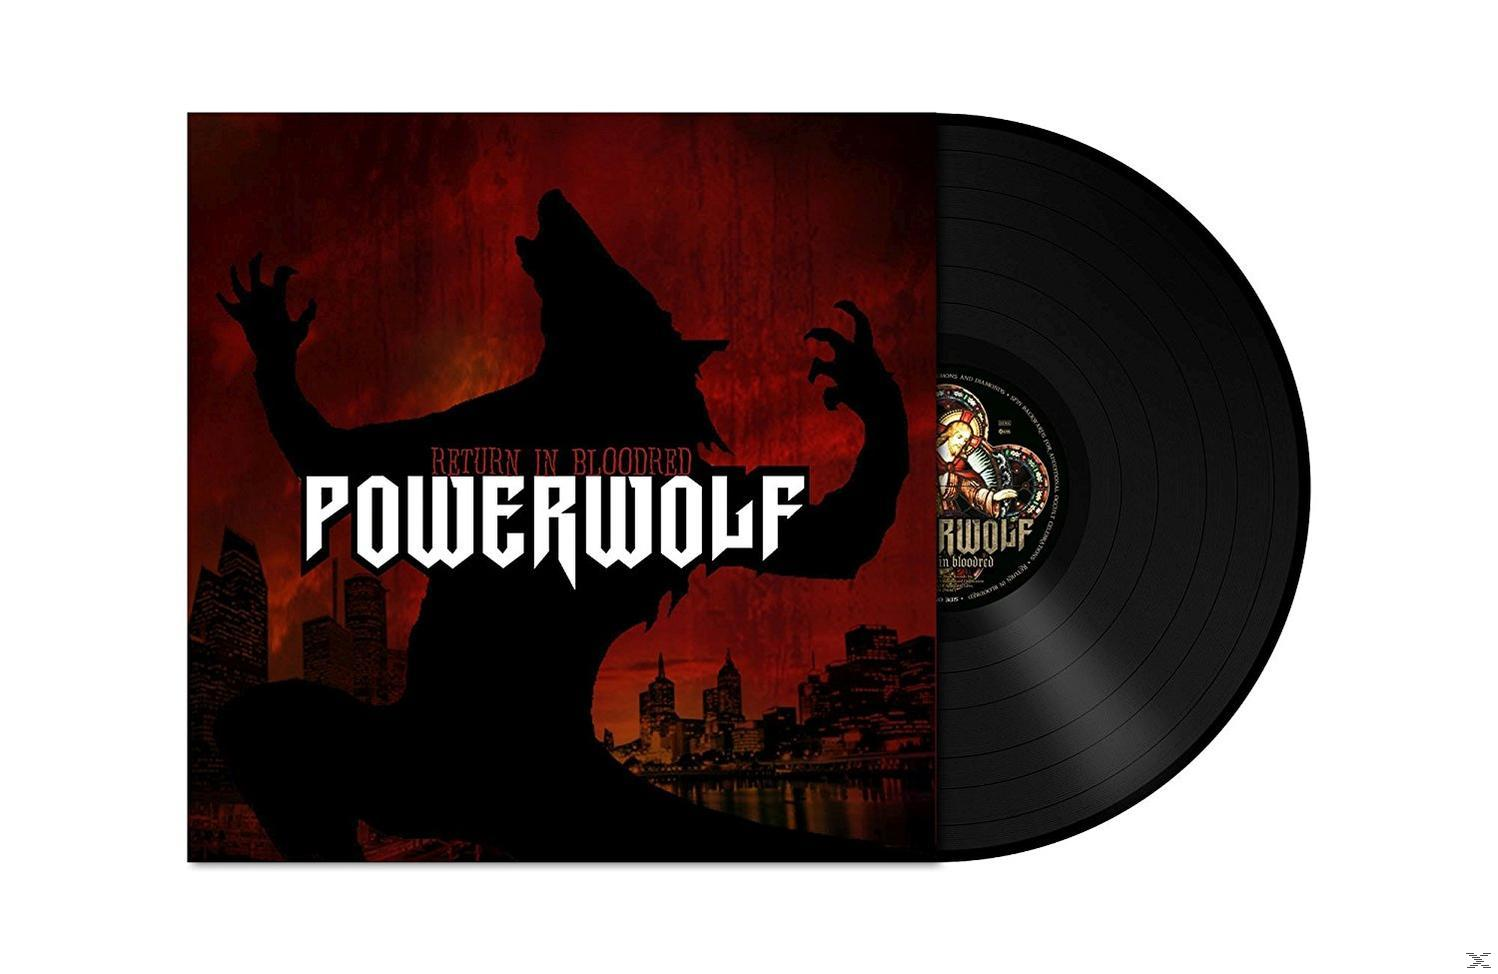 Powerwolf - Return In Bloodred (Vinyl) 